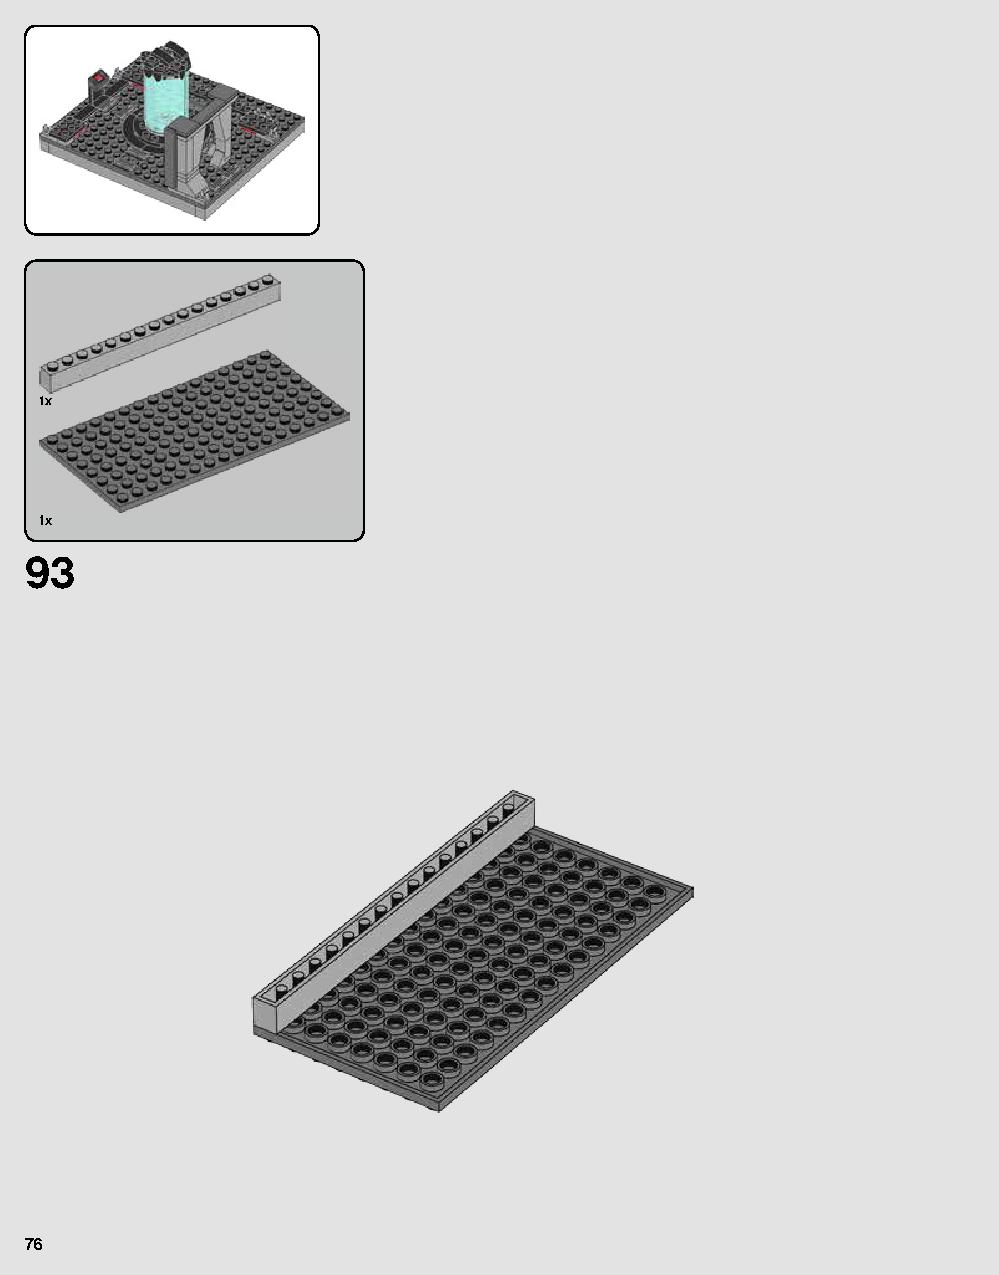 ダース・ベイダーの城 75251 レゴの商品情報 レゴの説明書・組立方法 76 page